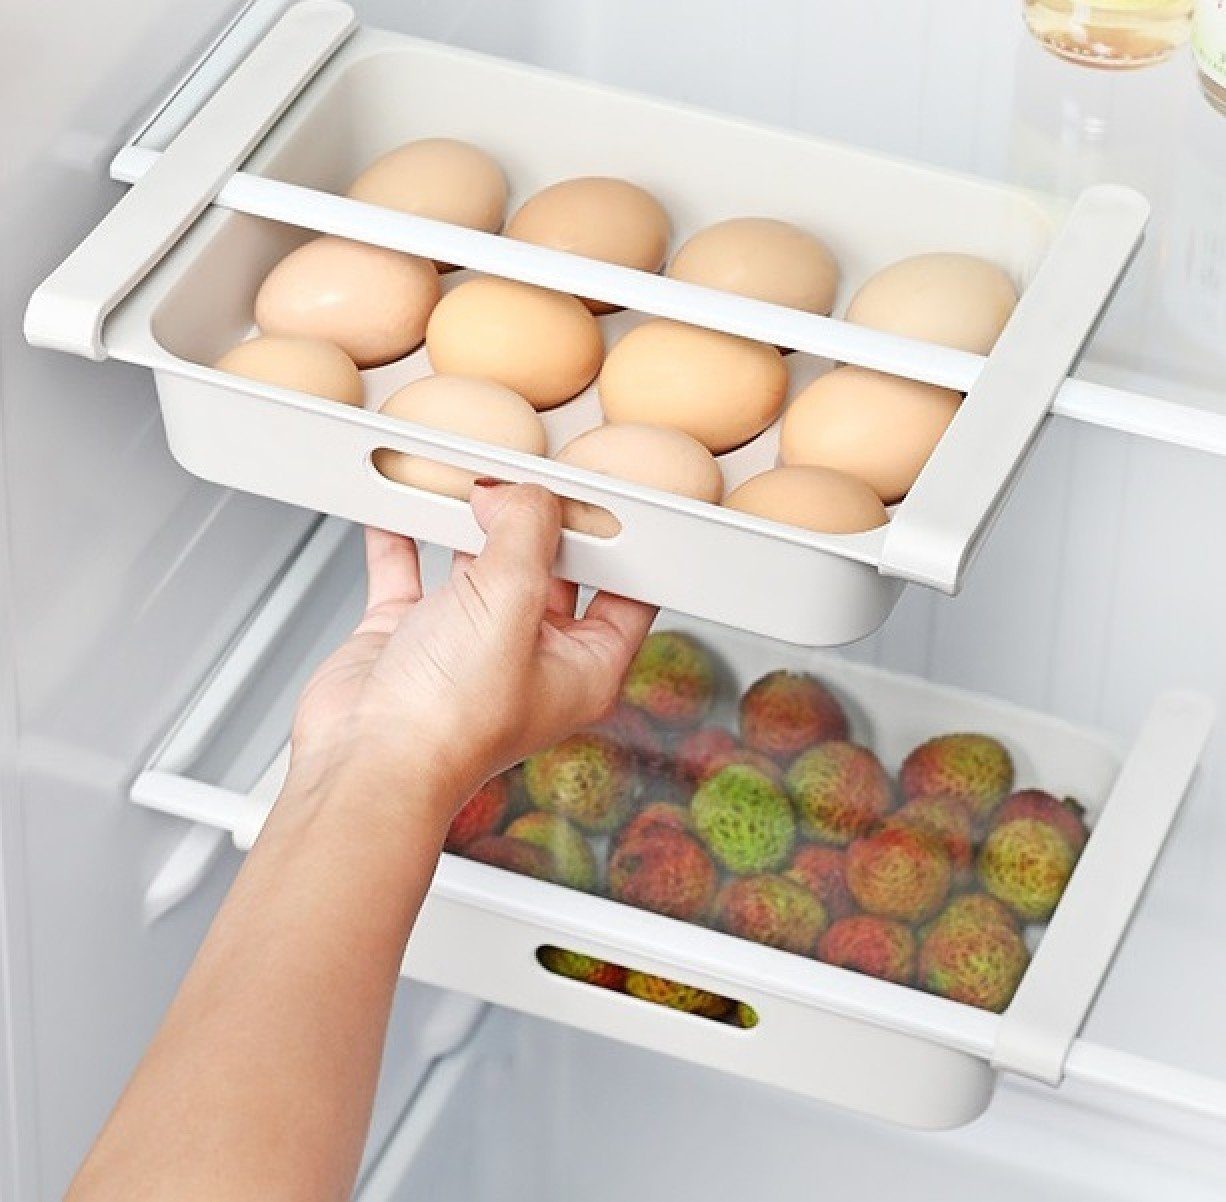 für BAYLI Kühlschrank Eierbehälter Pack 2er Organizer Kühlschrank Eierablage Pizzaschneider